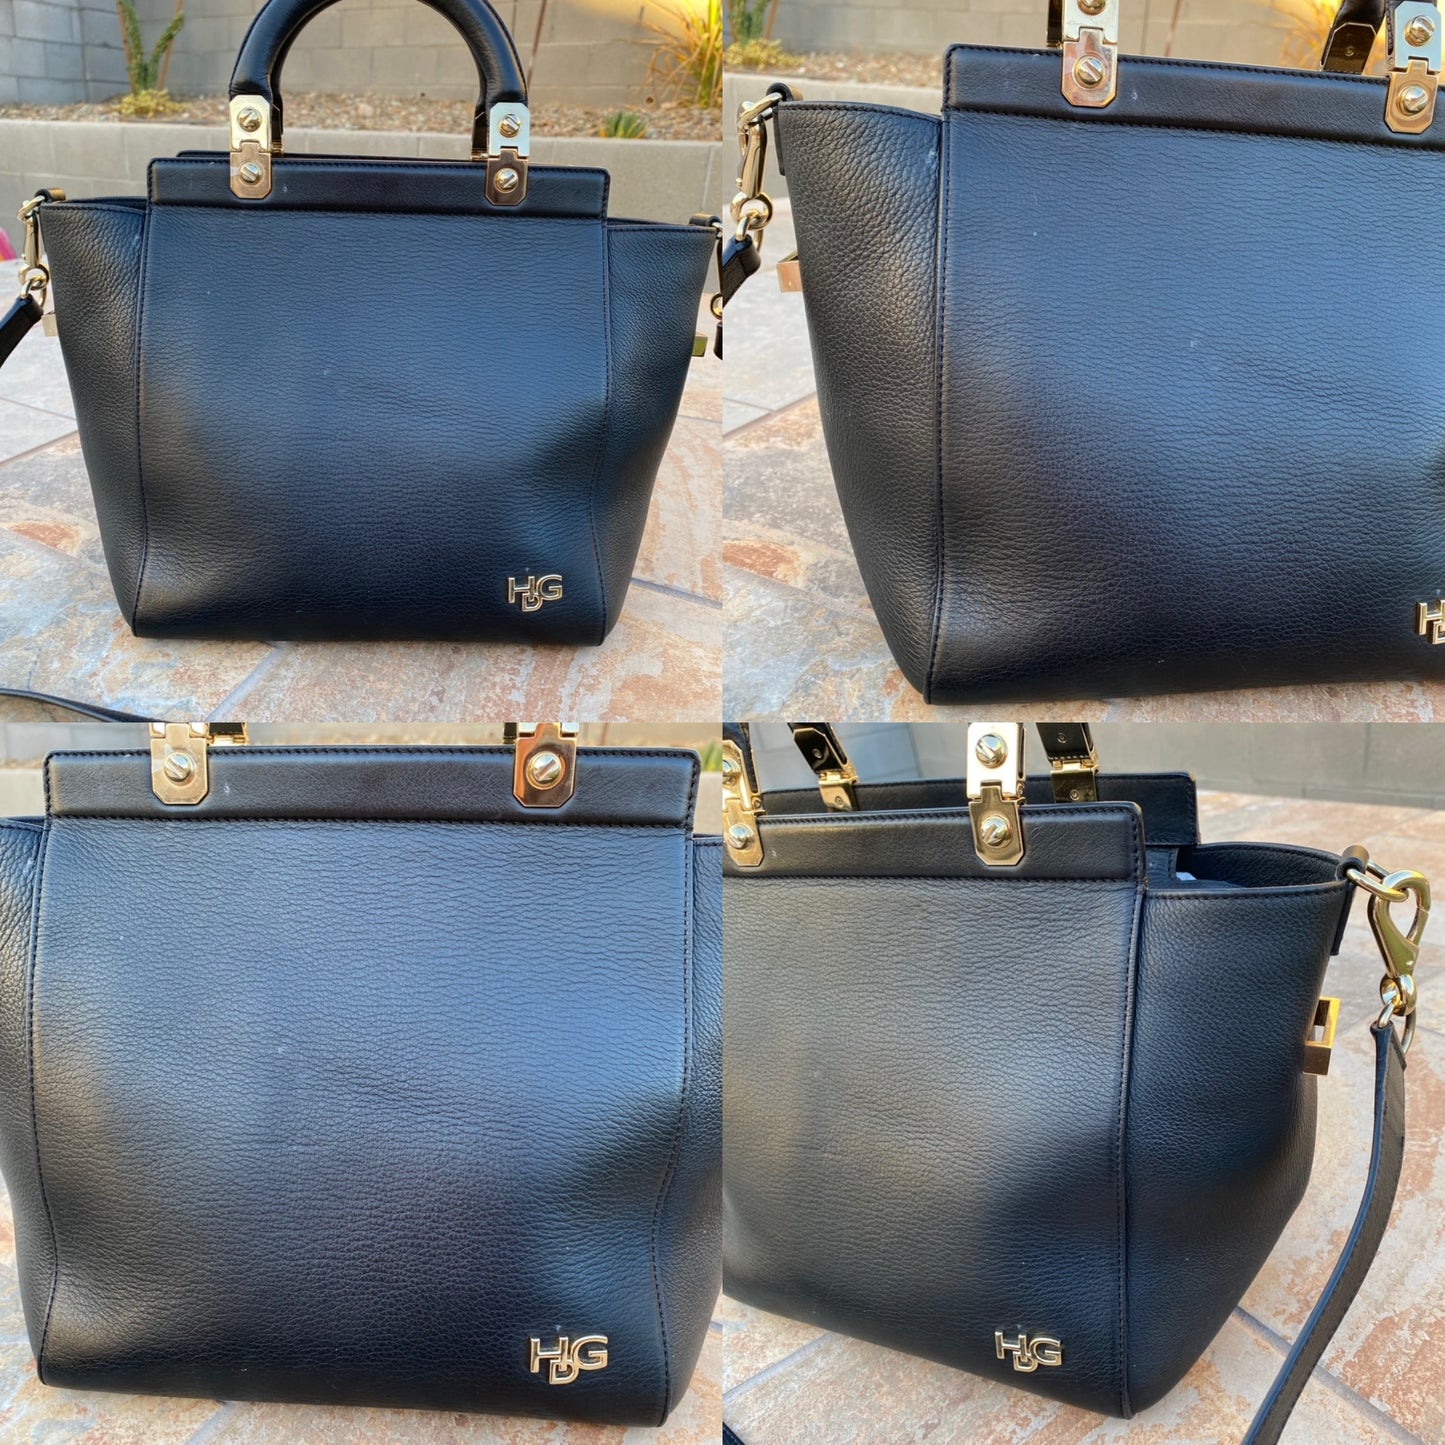 Givenchy HDG Calf Leather Shoulder Bag